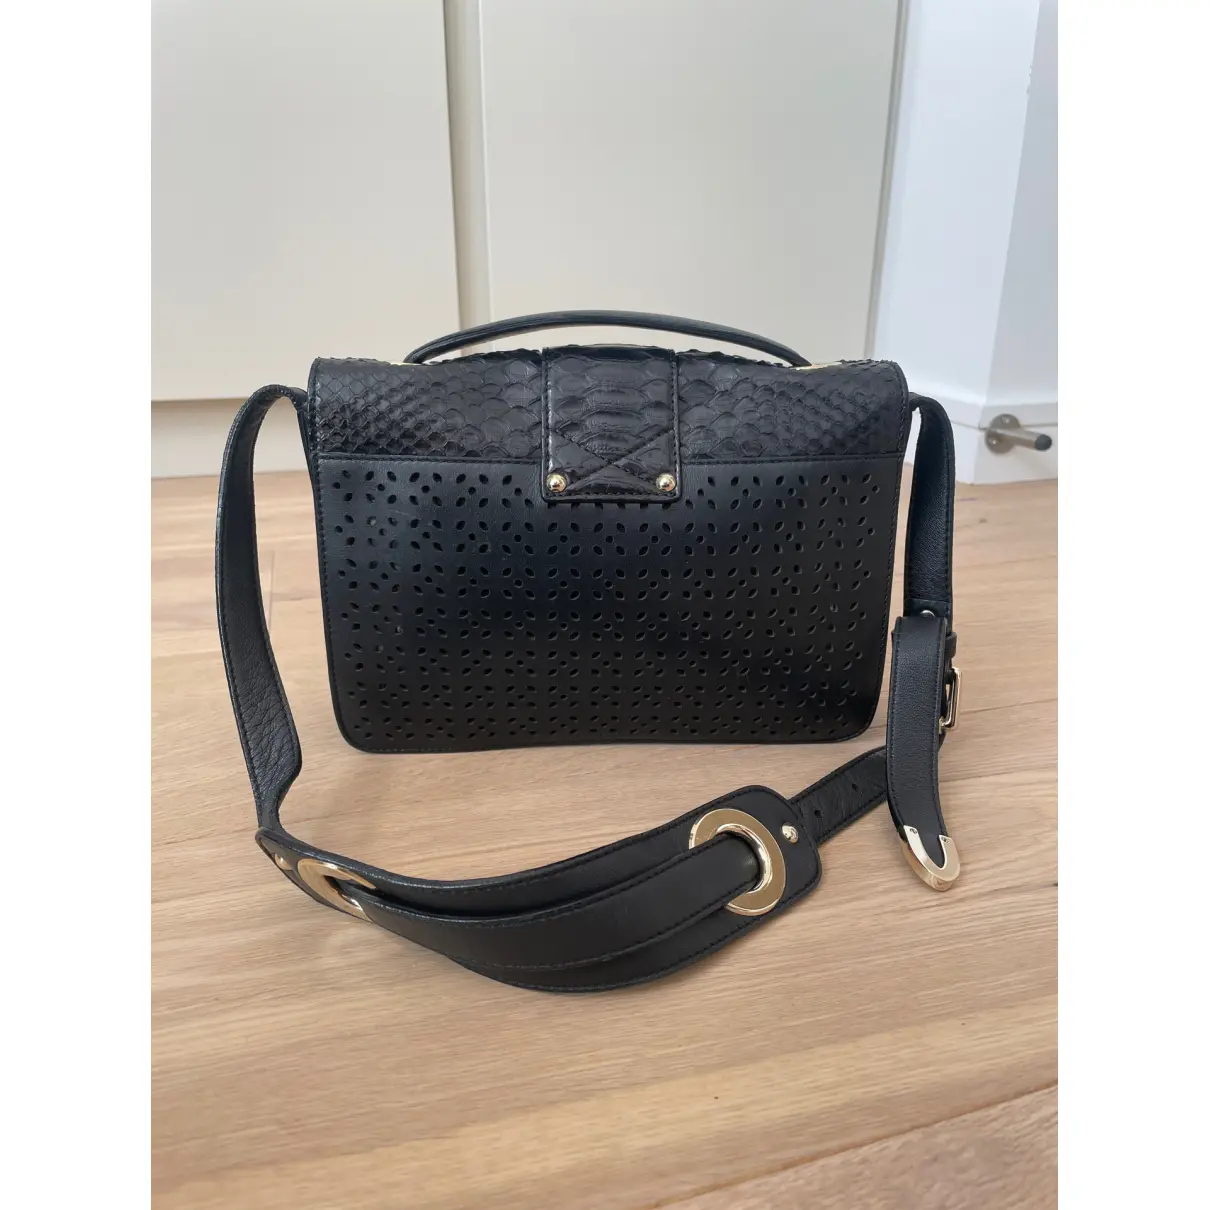 Buy Jimmy Choo Rebel leather handbag online